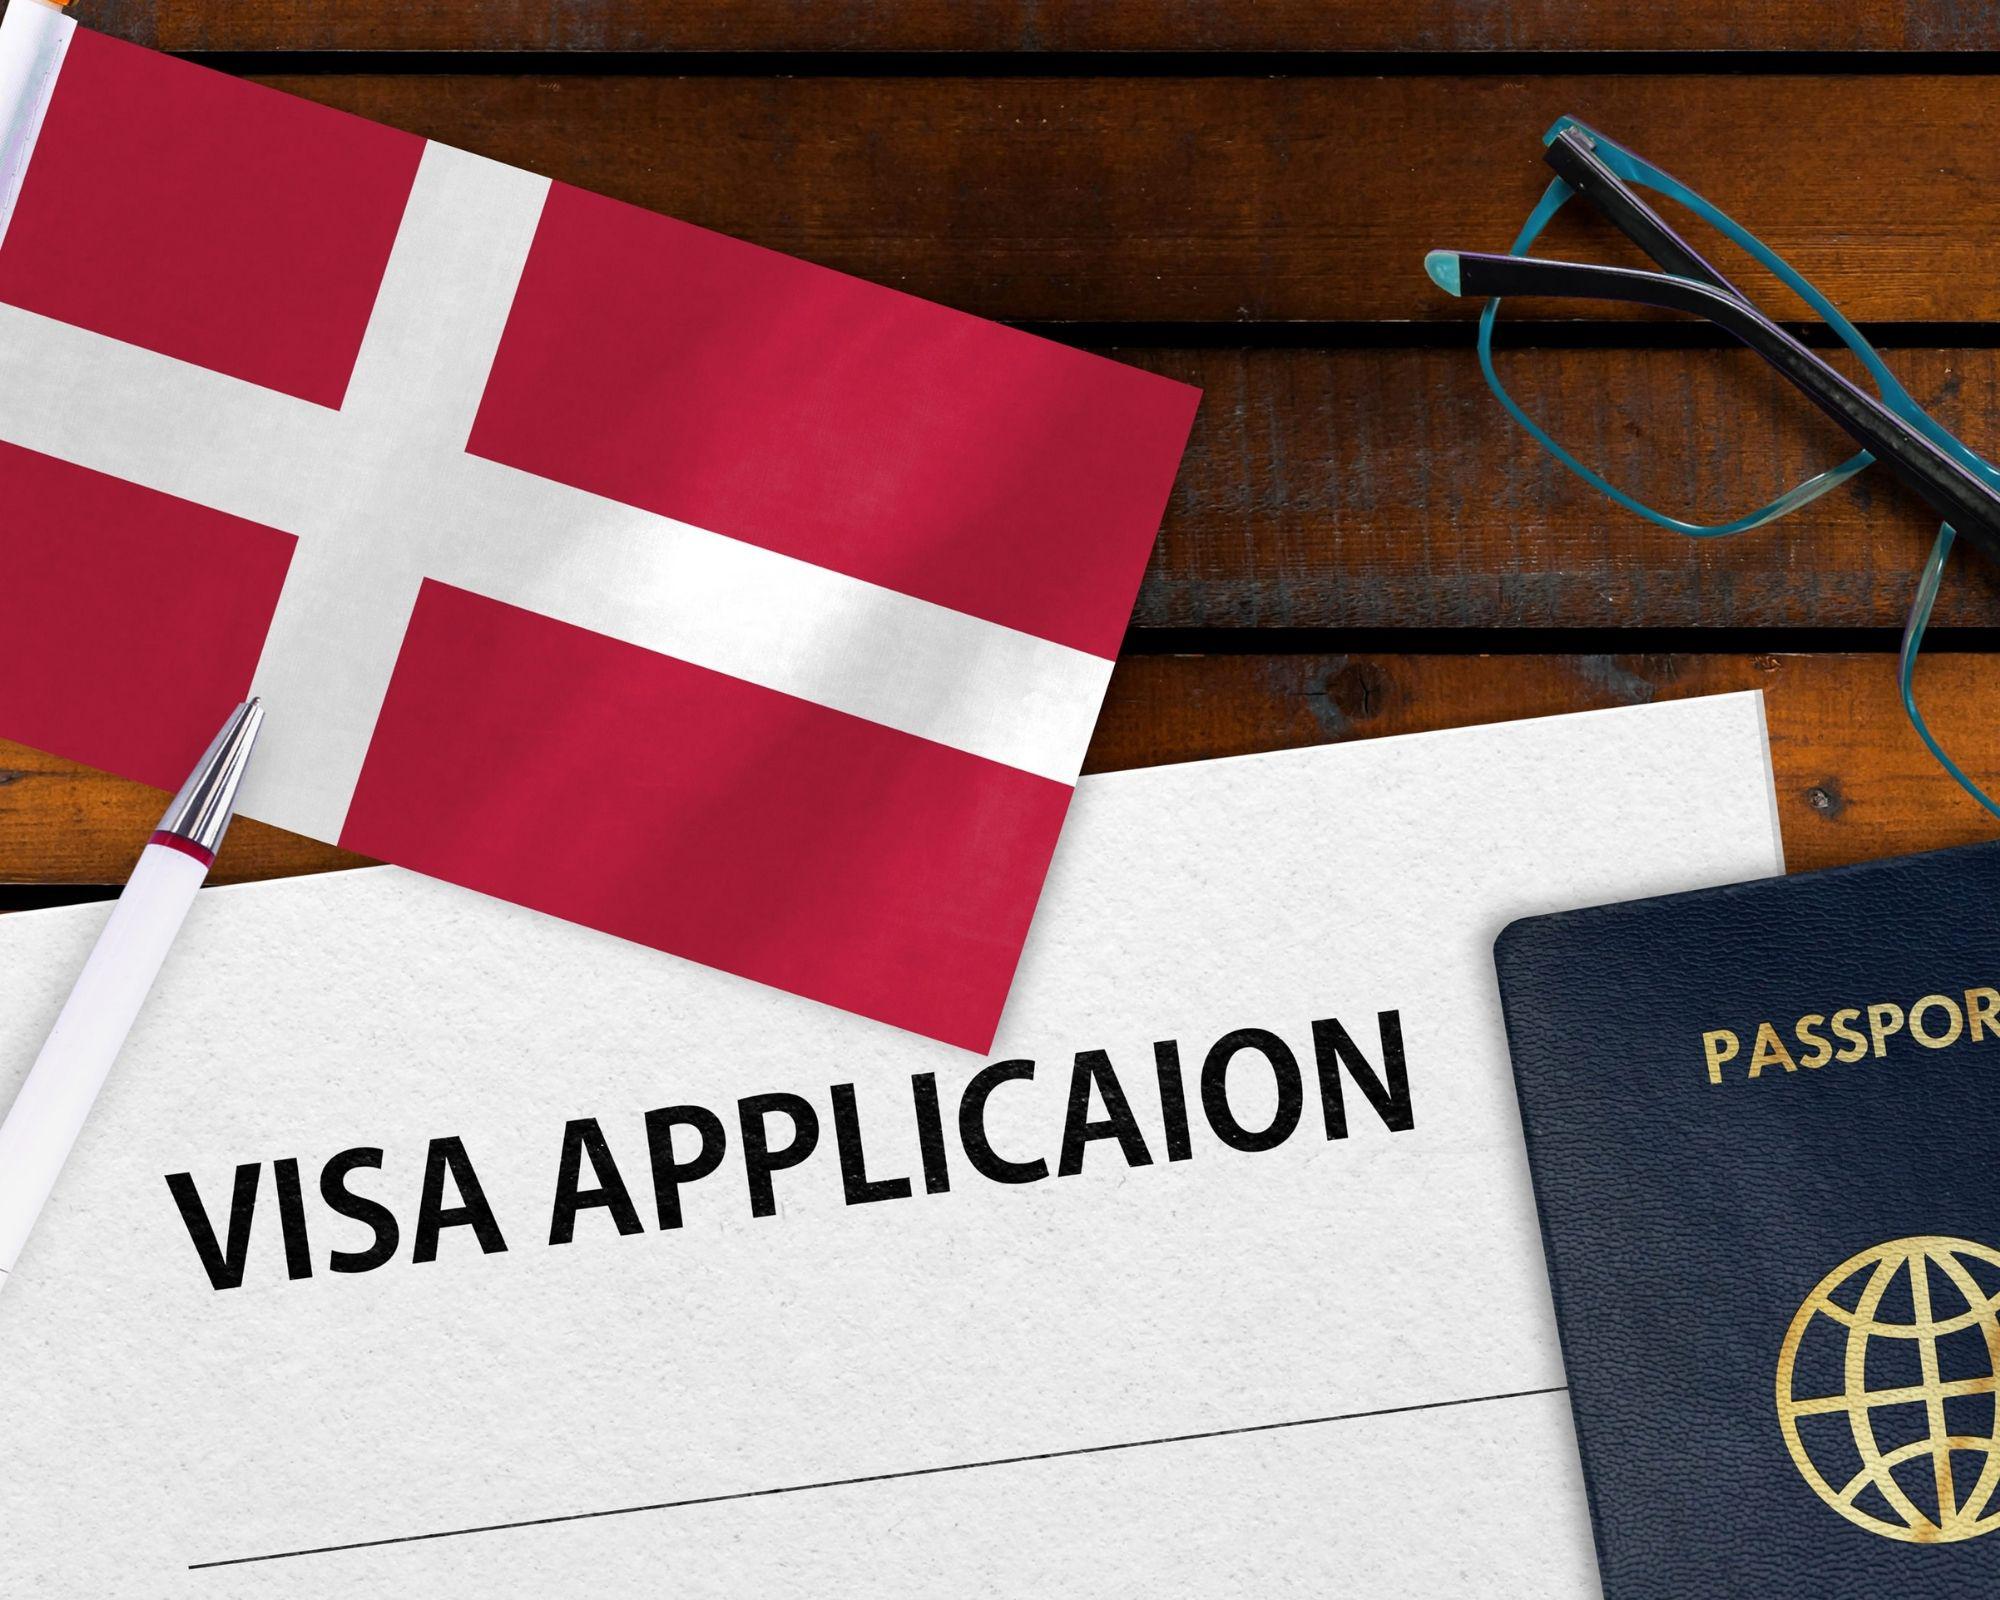 Dịch vụ bảo hiểm du lịch xin visa Đan Mạch giá tốt nhất